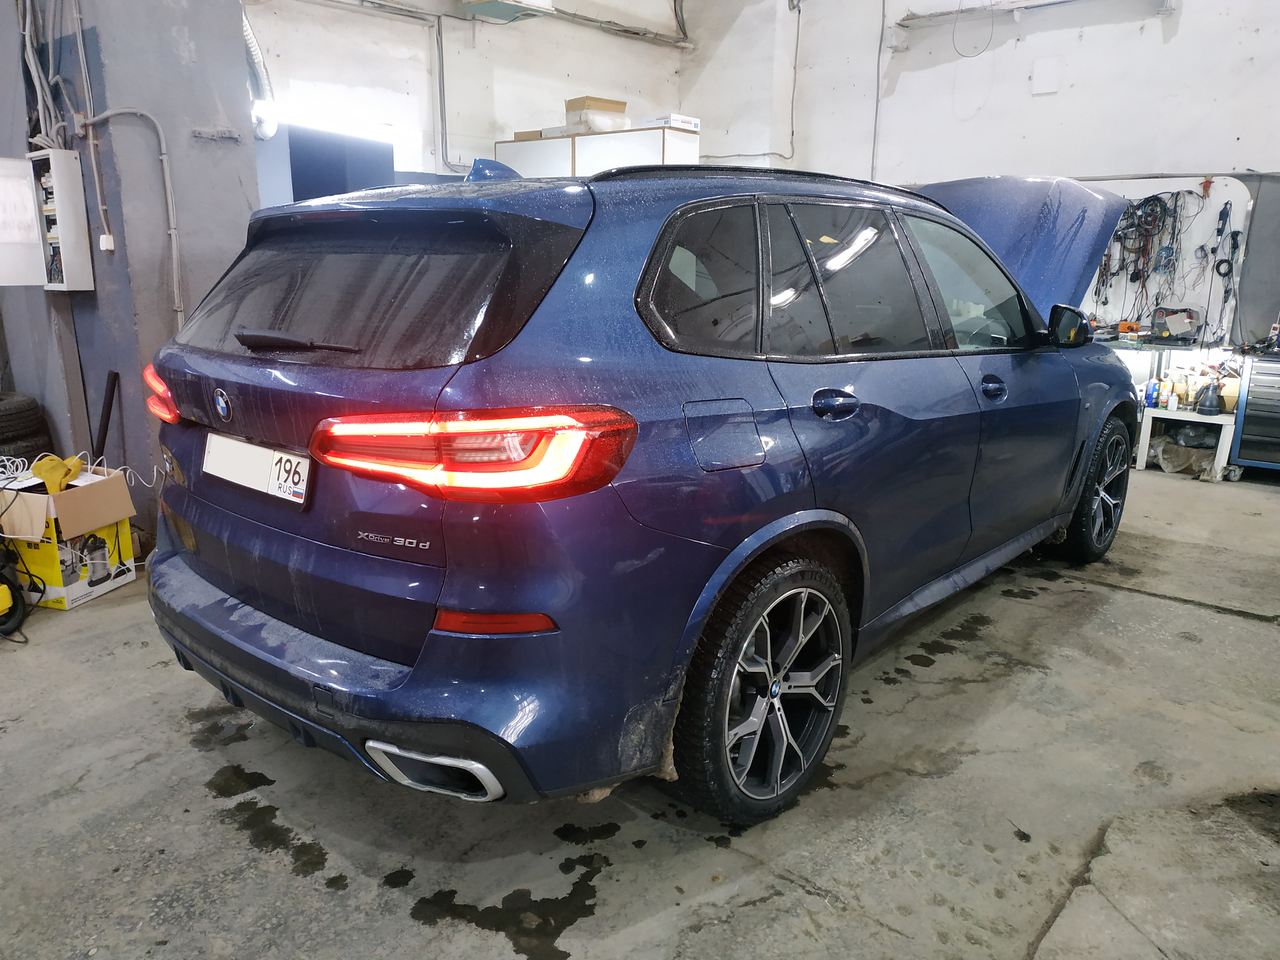 BMW G05 30d 2019 г.в., вид сзади